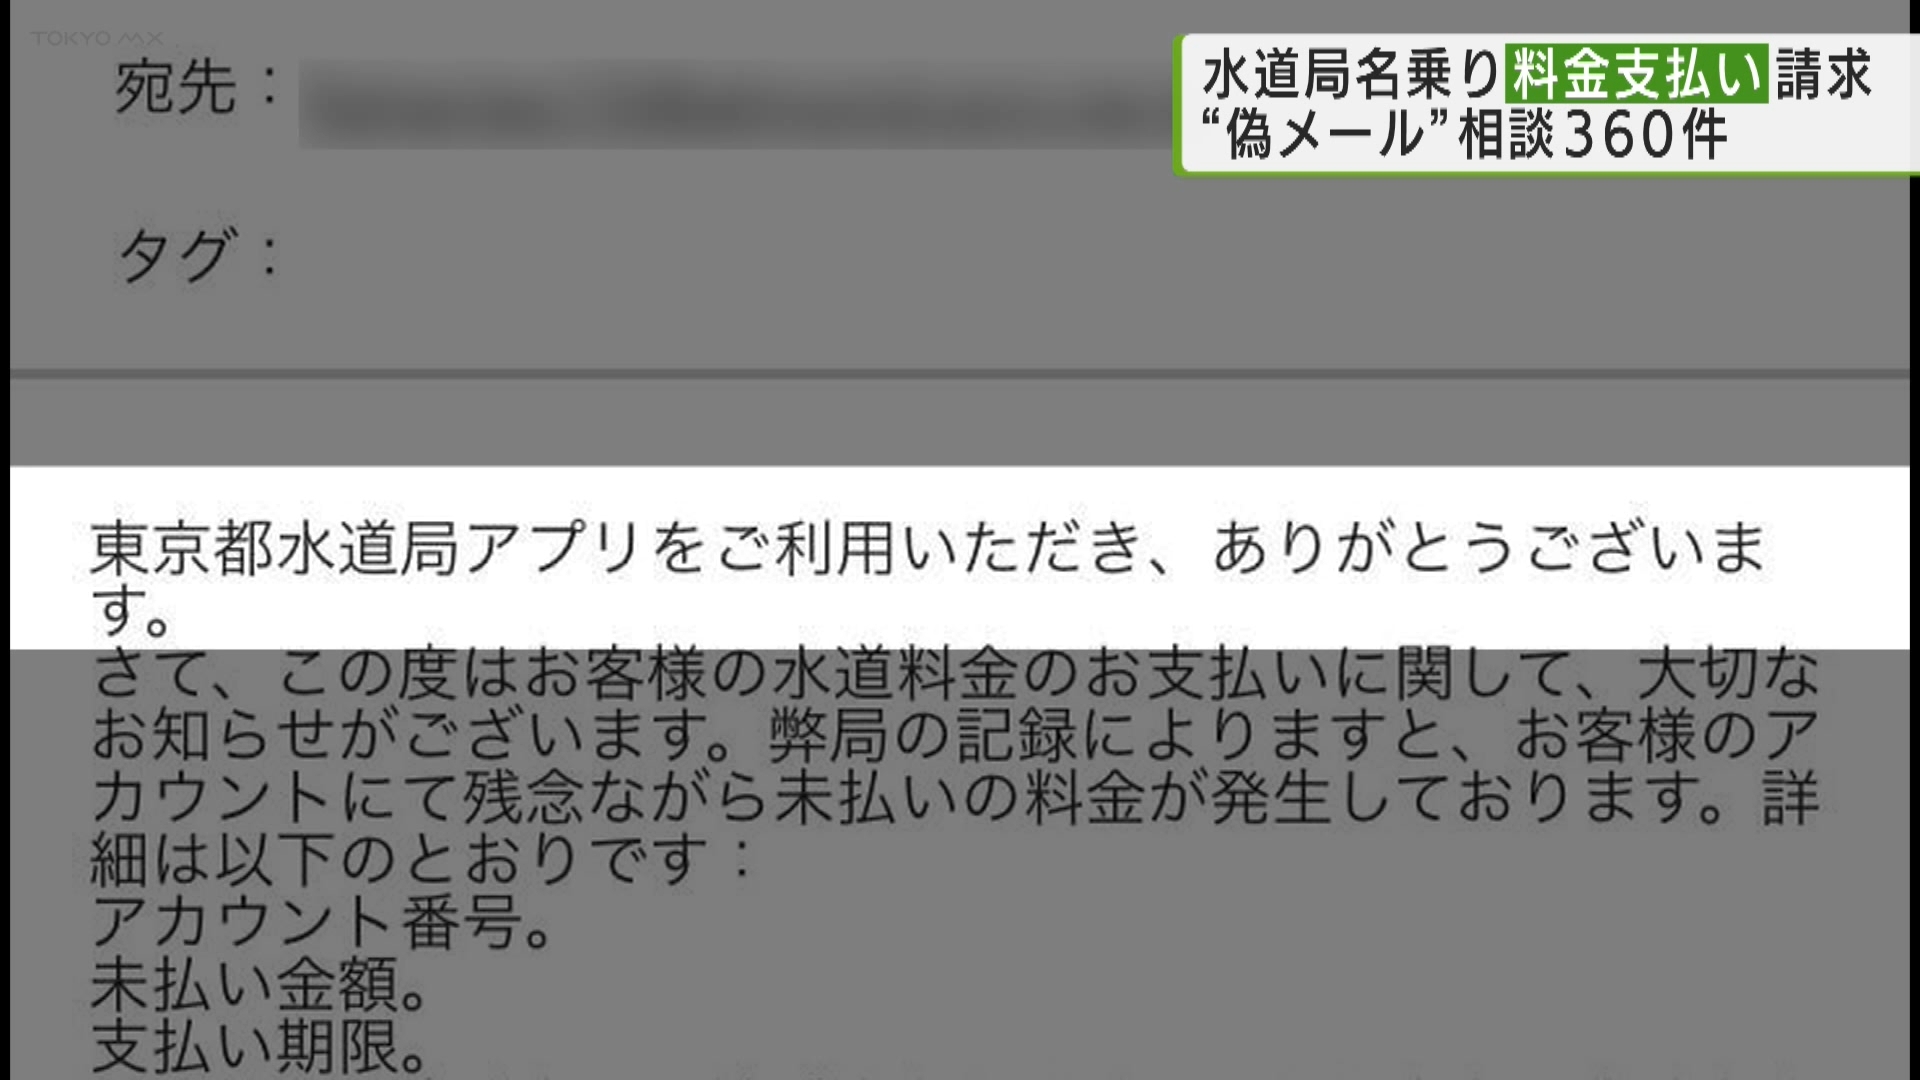 こちらのメール、TOKYO MXの報道部員に実際に届いたものです。東京都水道局の名前を語っていますが、虚偽のメールで、未払い料金を支払うよう求めるこうしたメールが来たという報告が都内で相次いでいます。